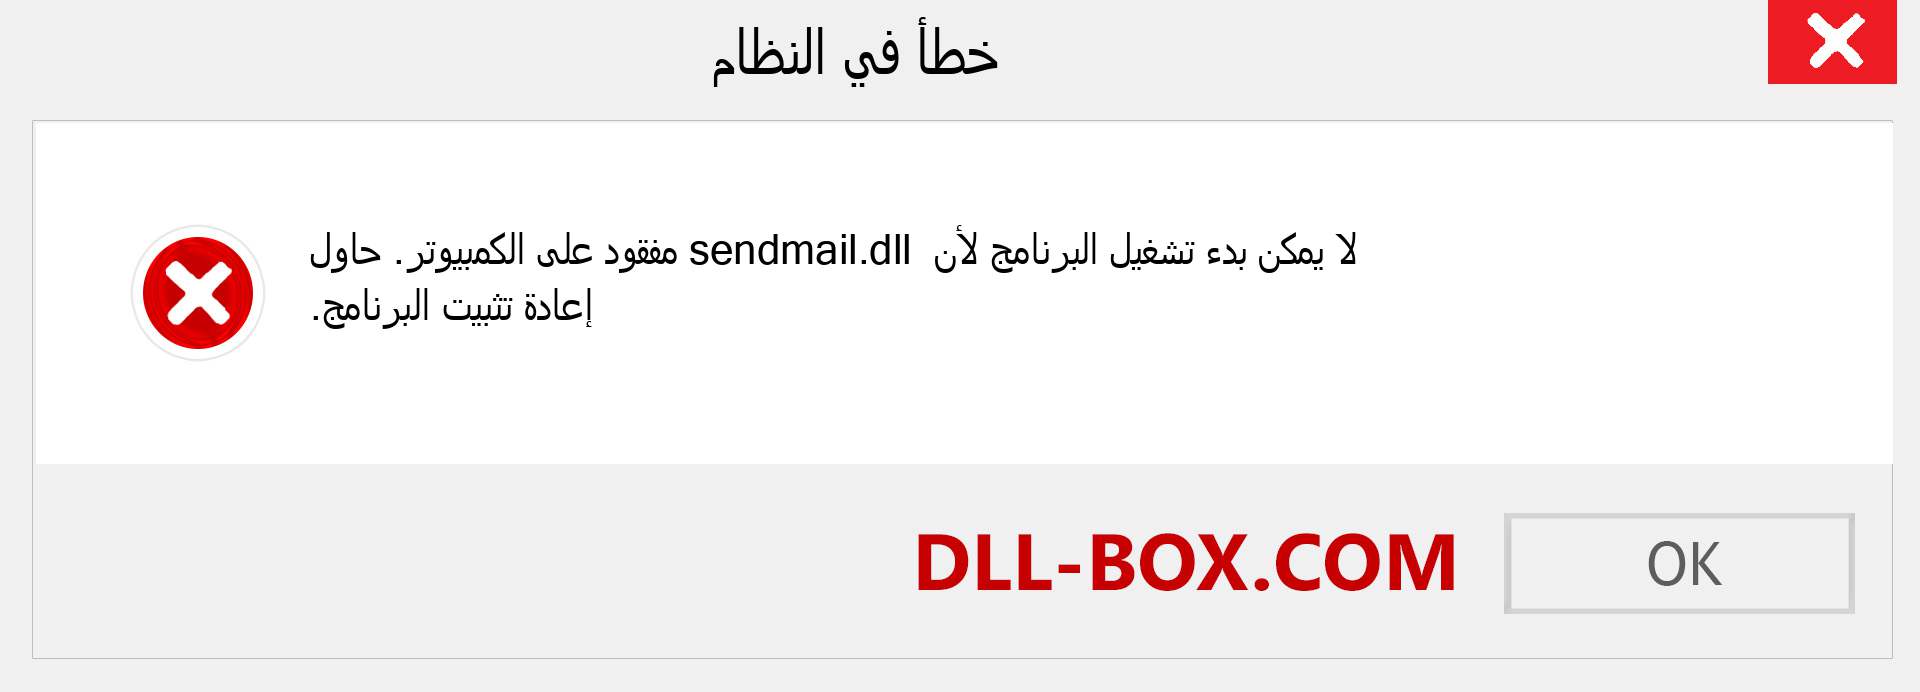 ملف sendmail.dll مفقود ؟. التنزيل لنظام التشغيل Windows 7 و 8 و 10 - إصلاح خطأ sendmail dll المفقود على Windows والصور والصور